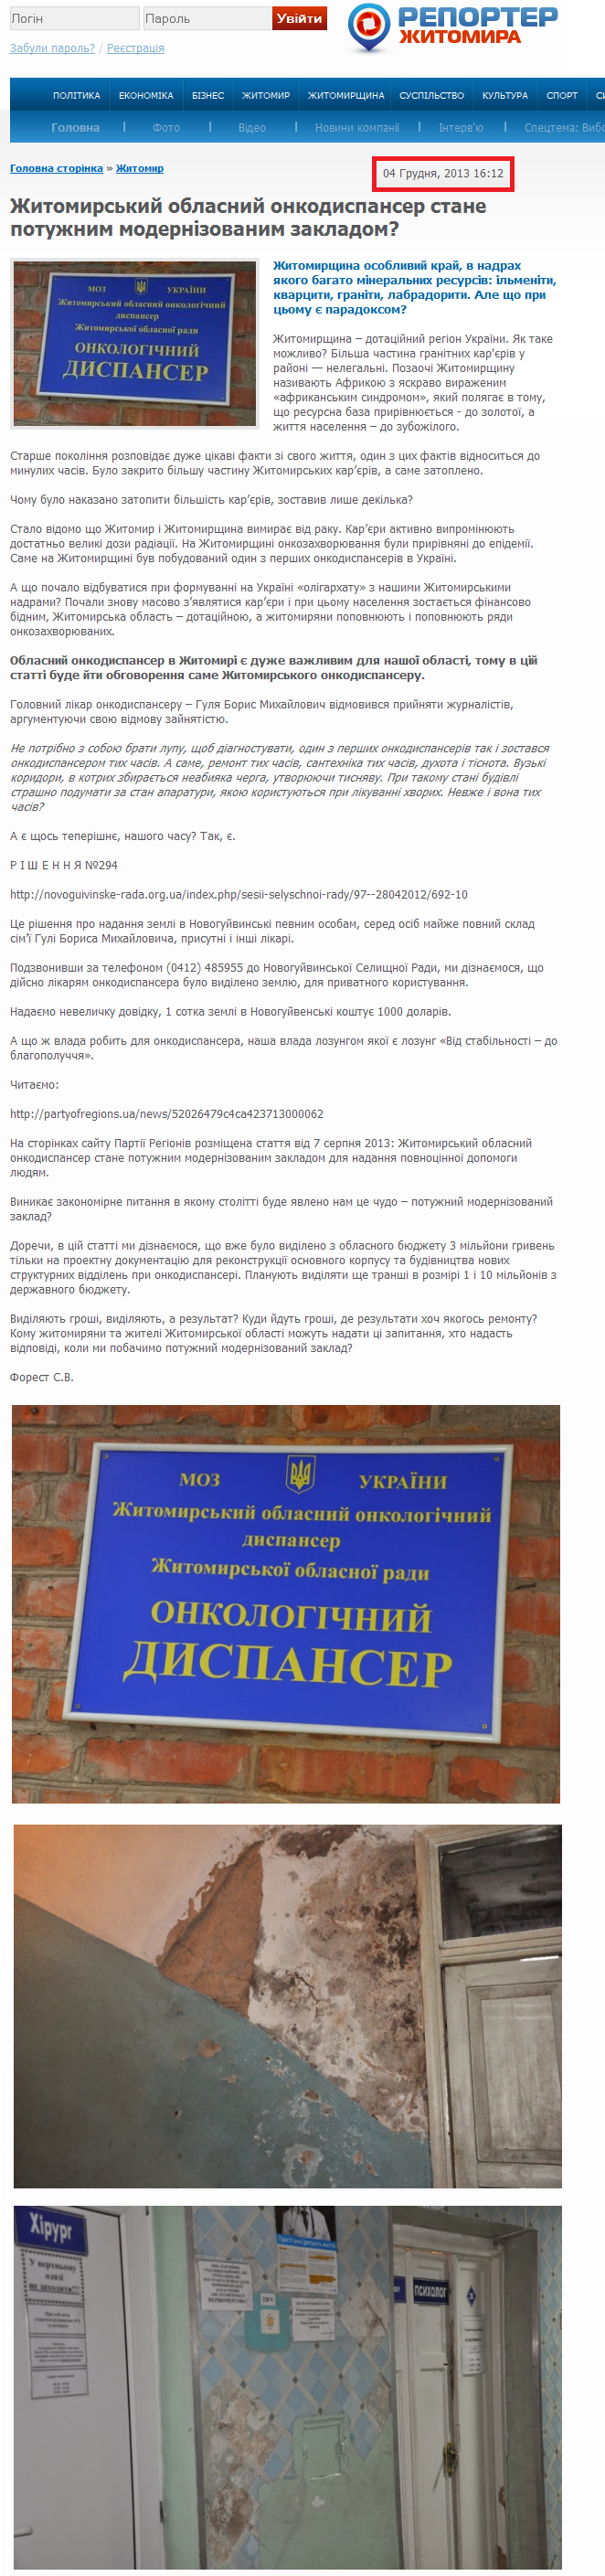 http://reporter.zt.ua/news/12052-zhytomyrskyi-oblasnyi-onkodyspanser-stane-potuzhnym-modernizovanym-zakladom